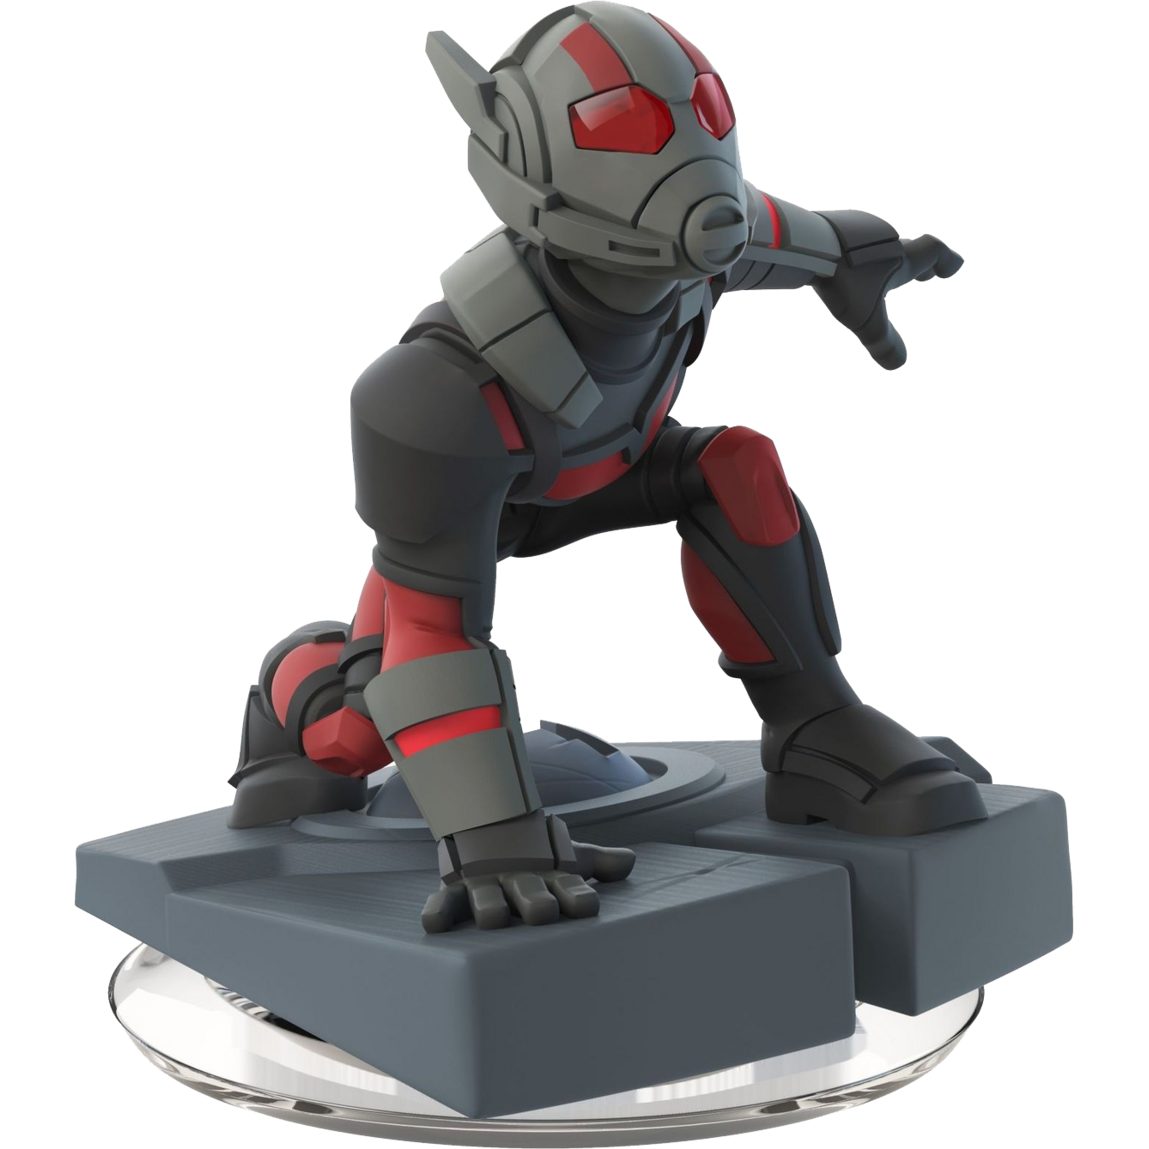 Disney Infinity 3.0 - Ant Man Figure